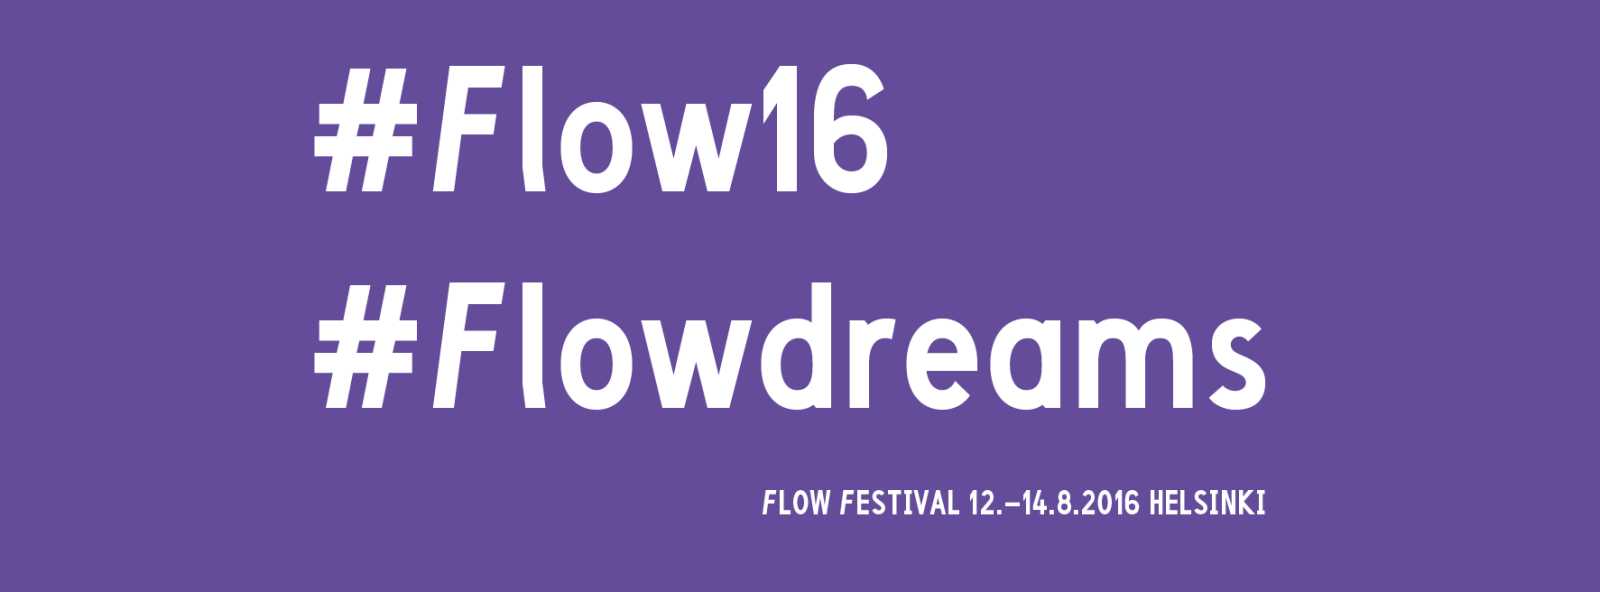 flow 2016-dreams-